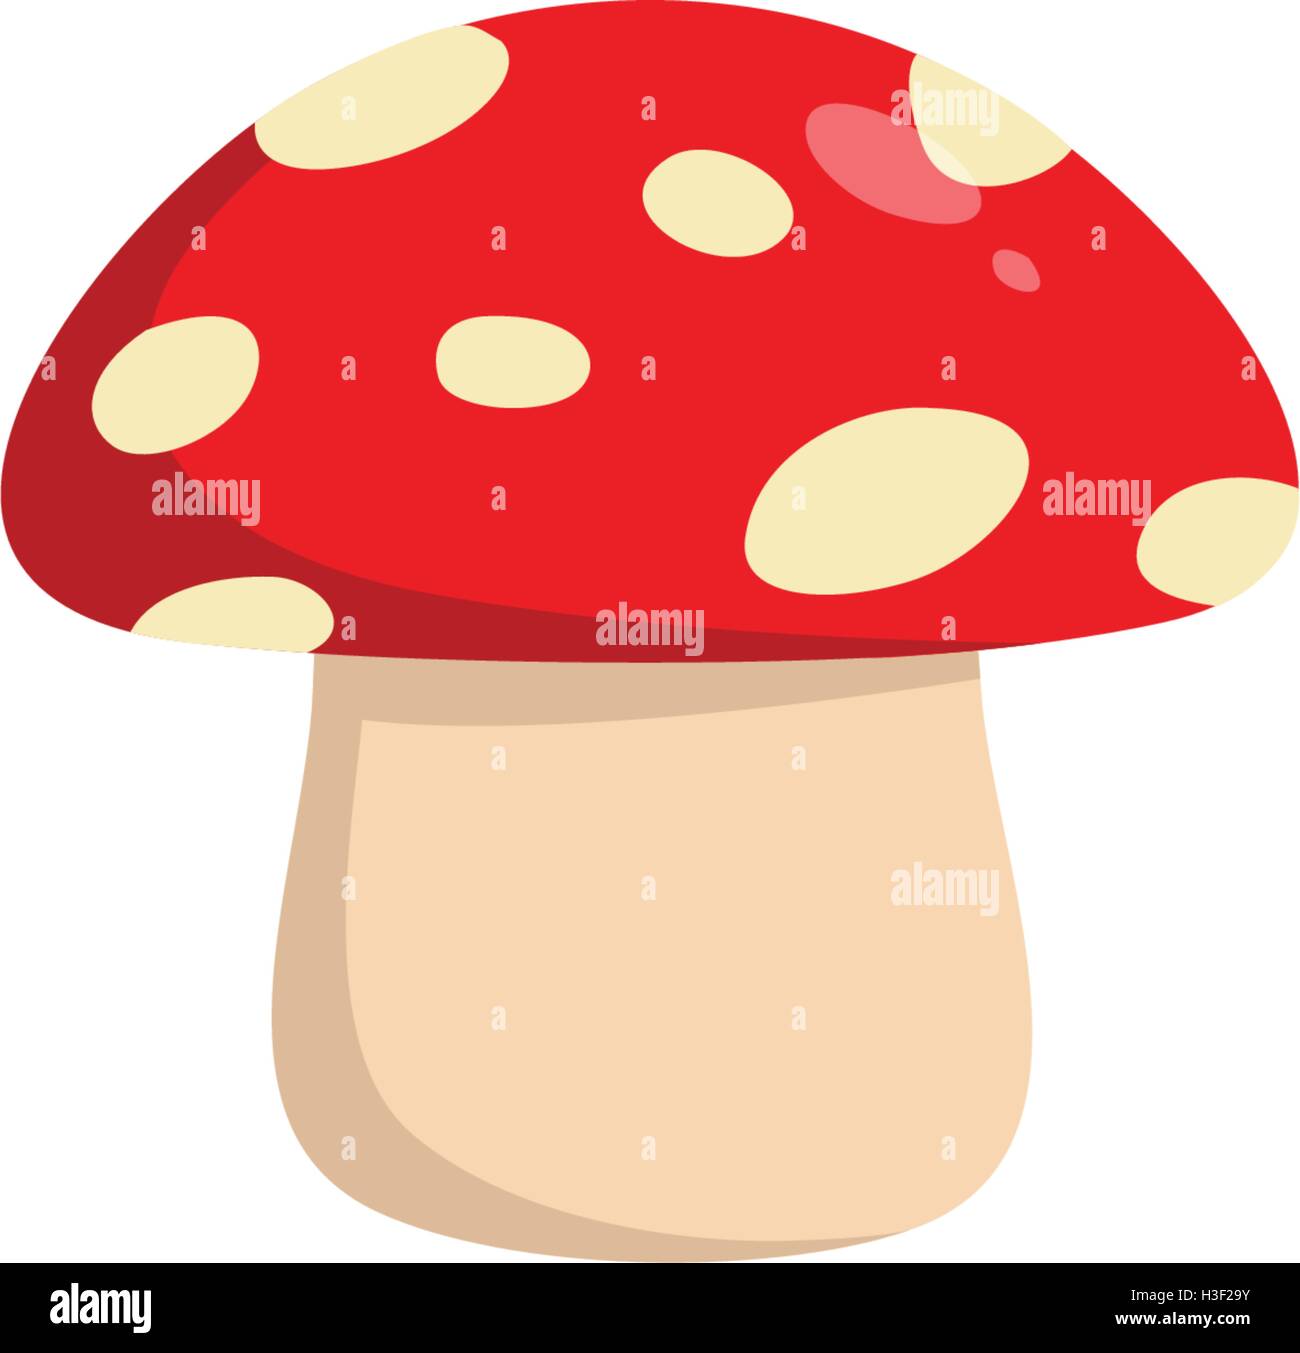 Mushroom Vector Illustration Flat Design Stock Vector